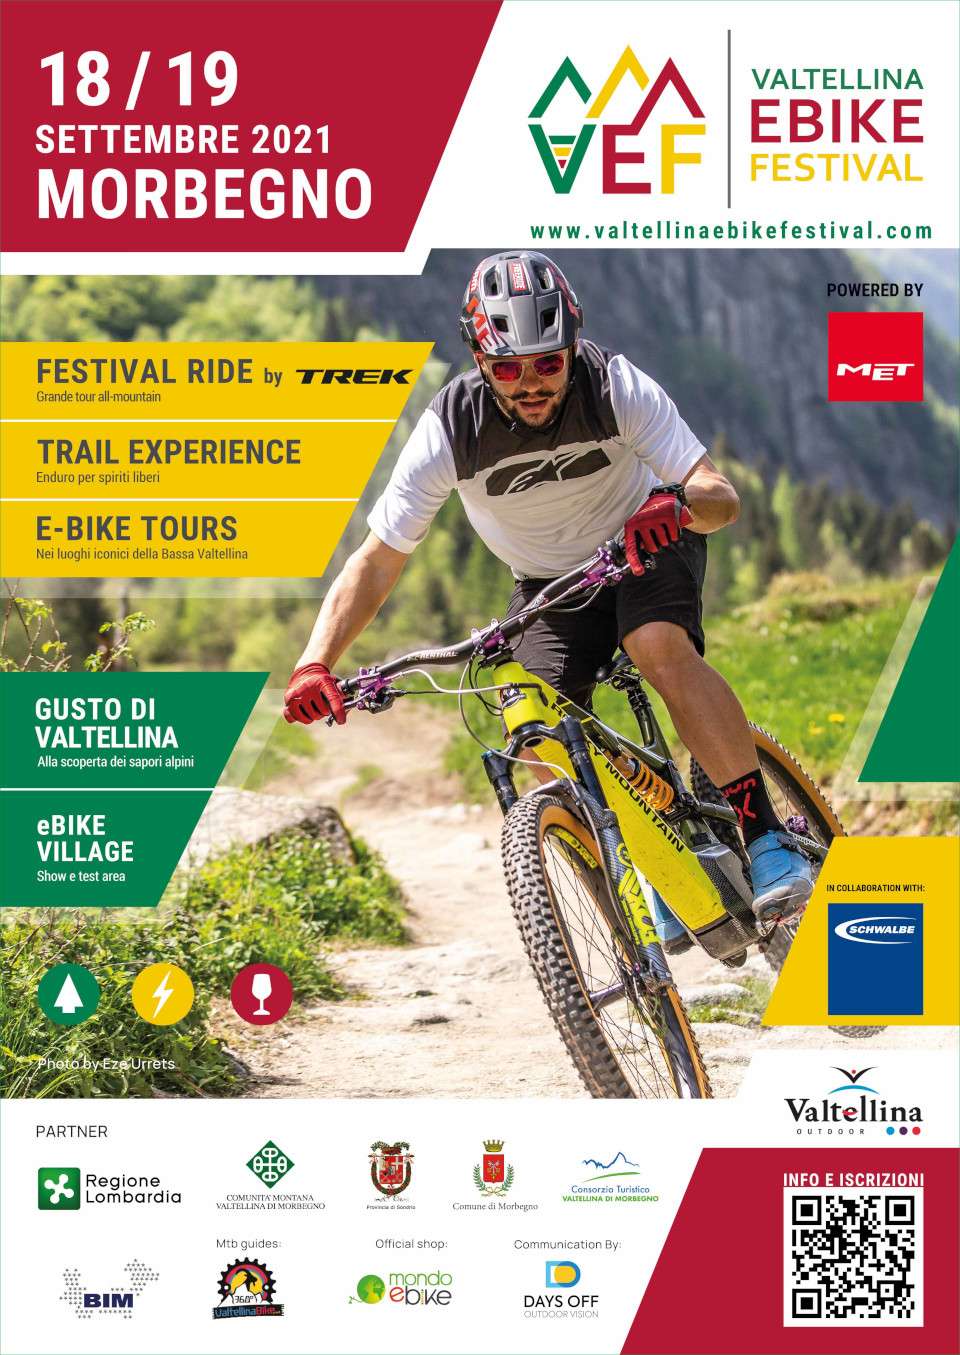 Valtellina ebike festival